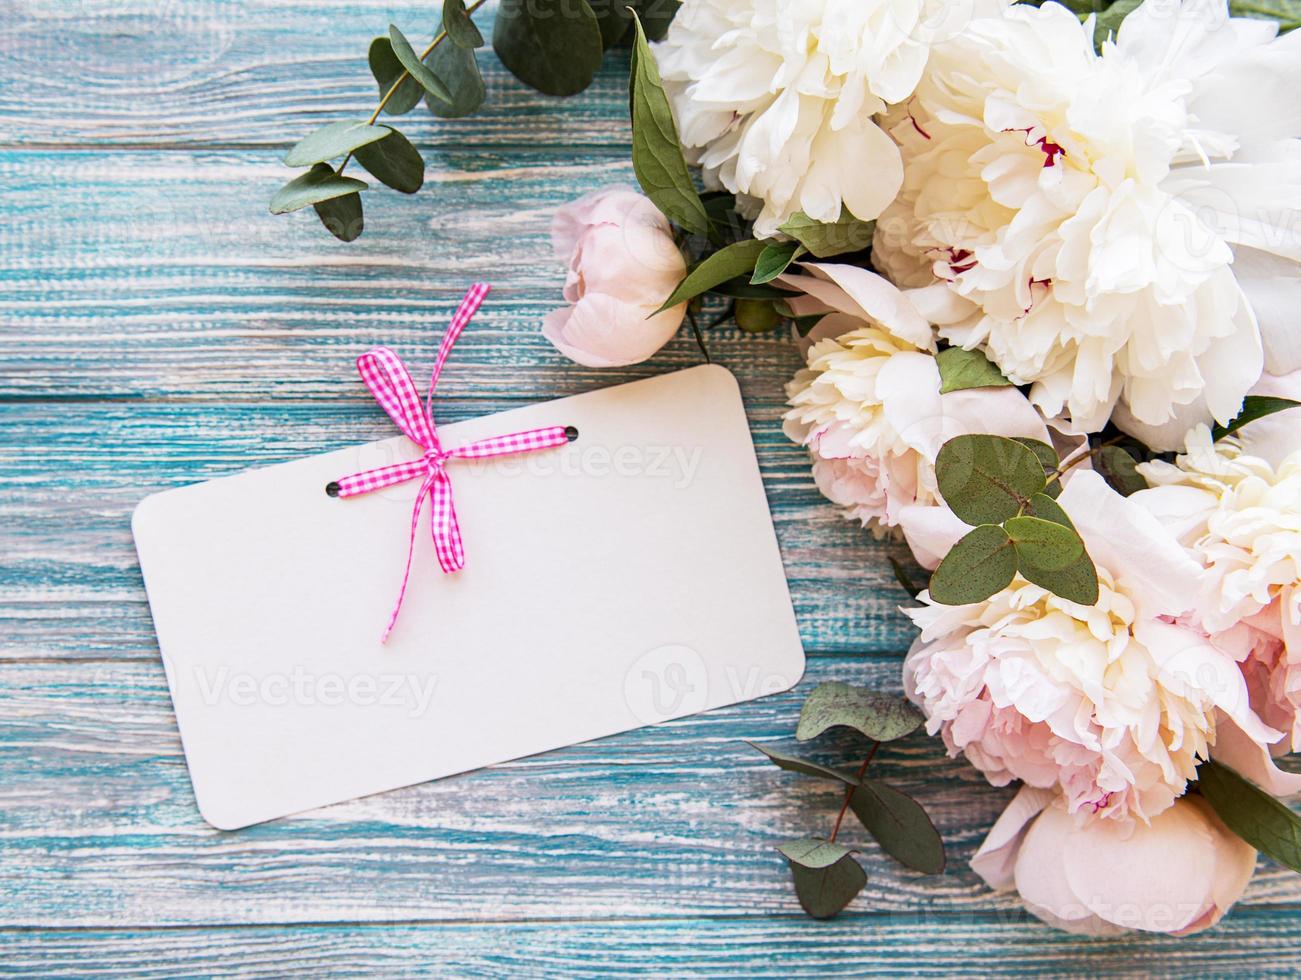 huwelijksuitnodiging met roze pioenrozen foto